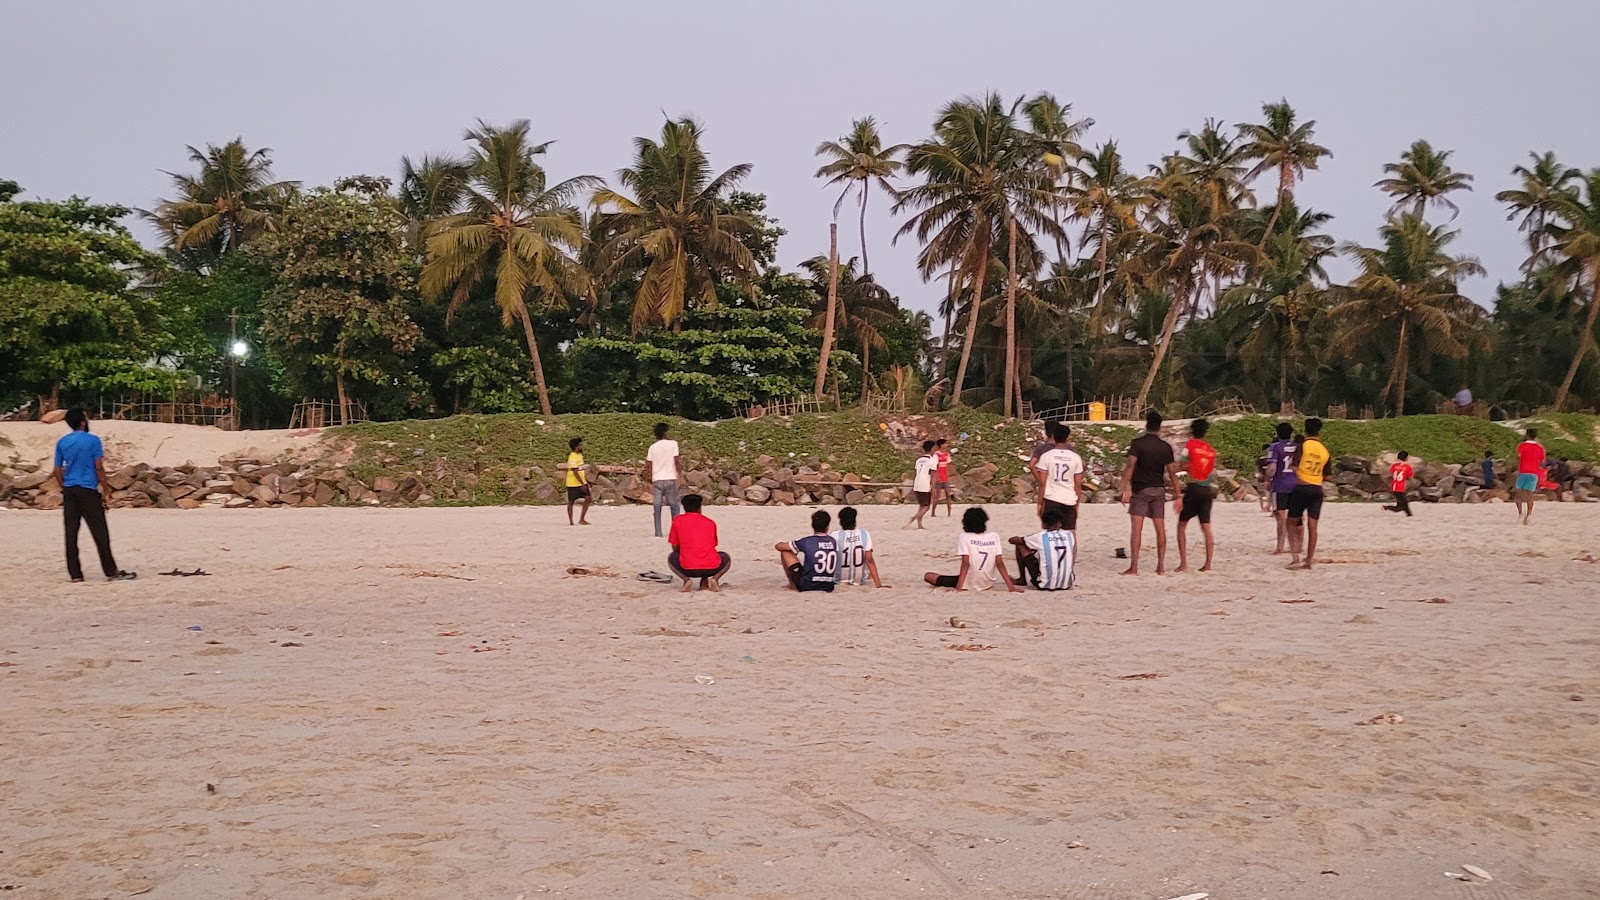 Foto van Chellanam Beach Kochi met gemiddeld niveau van netheid